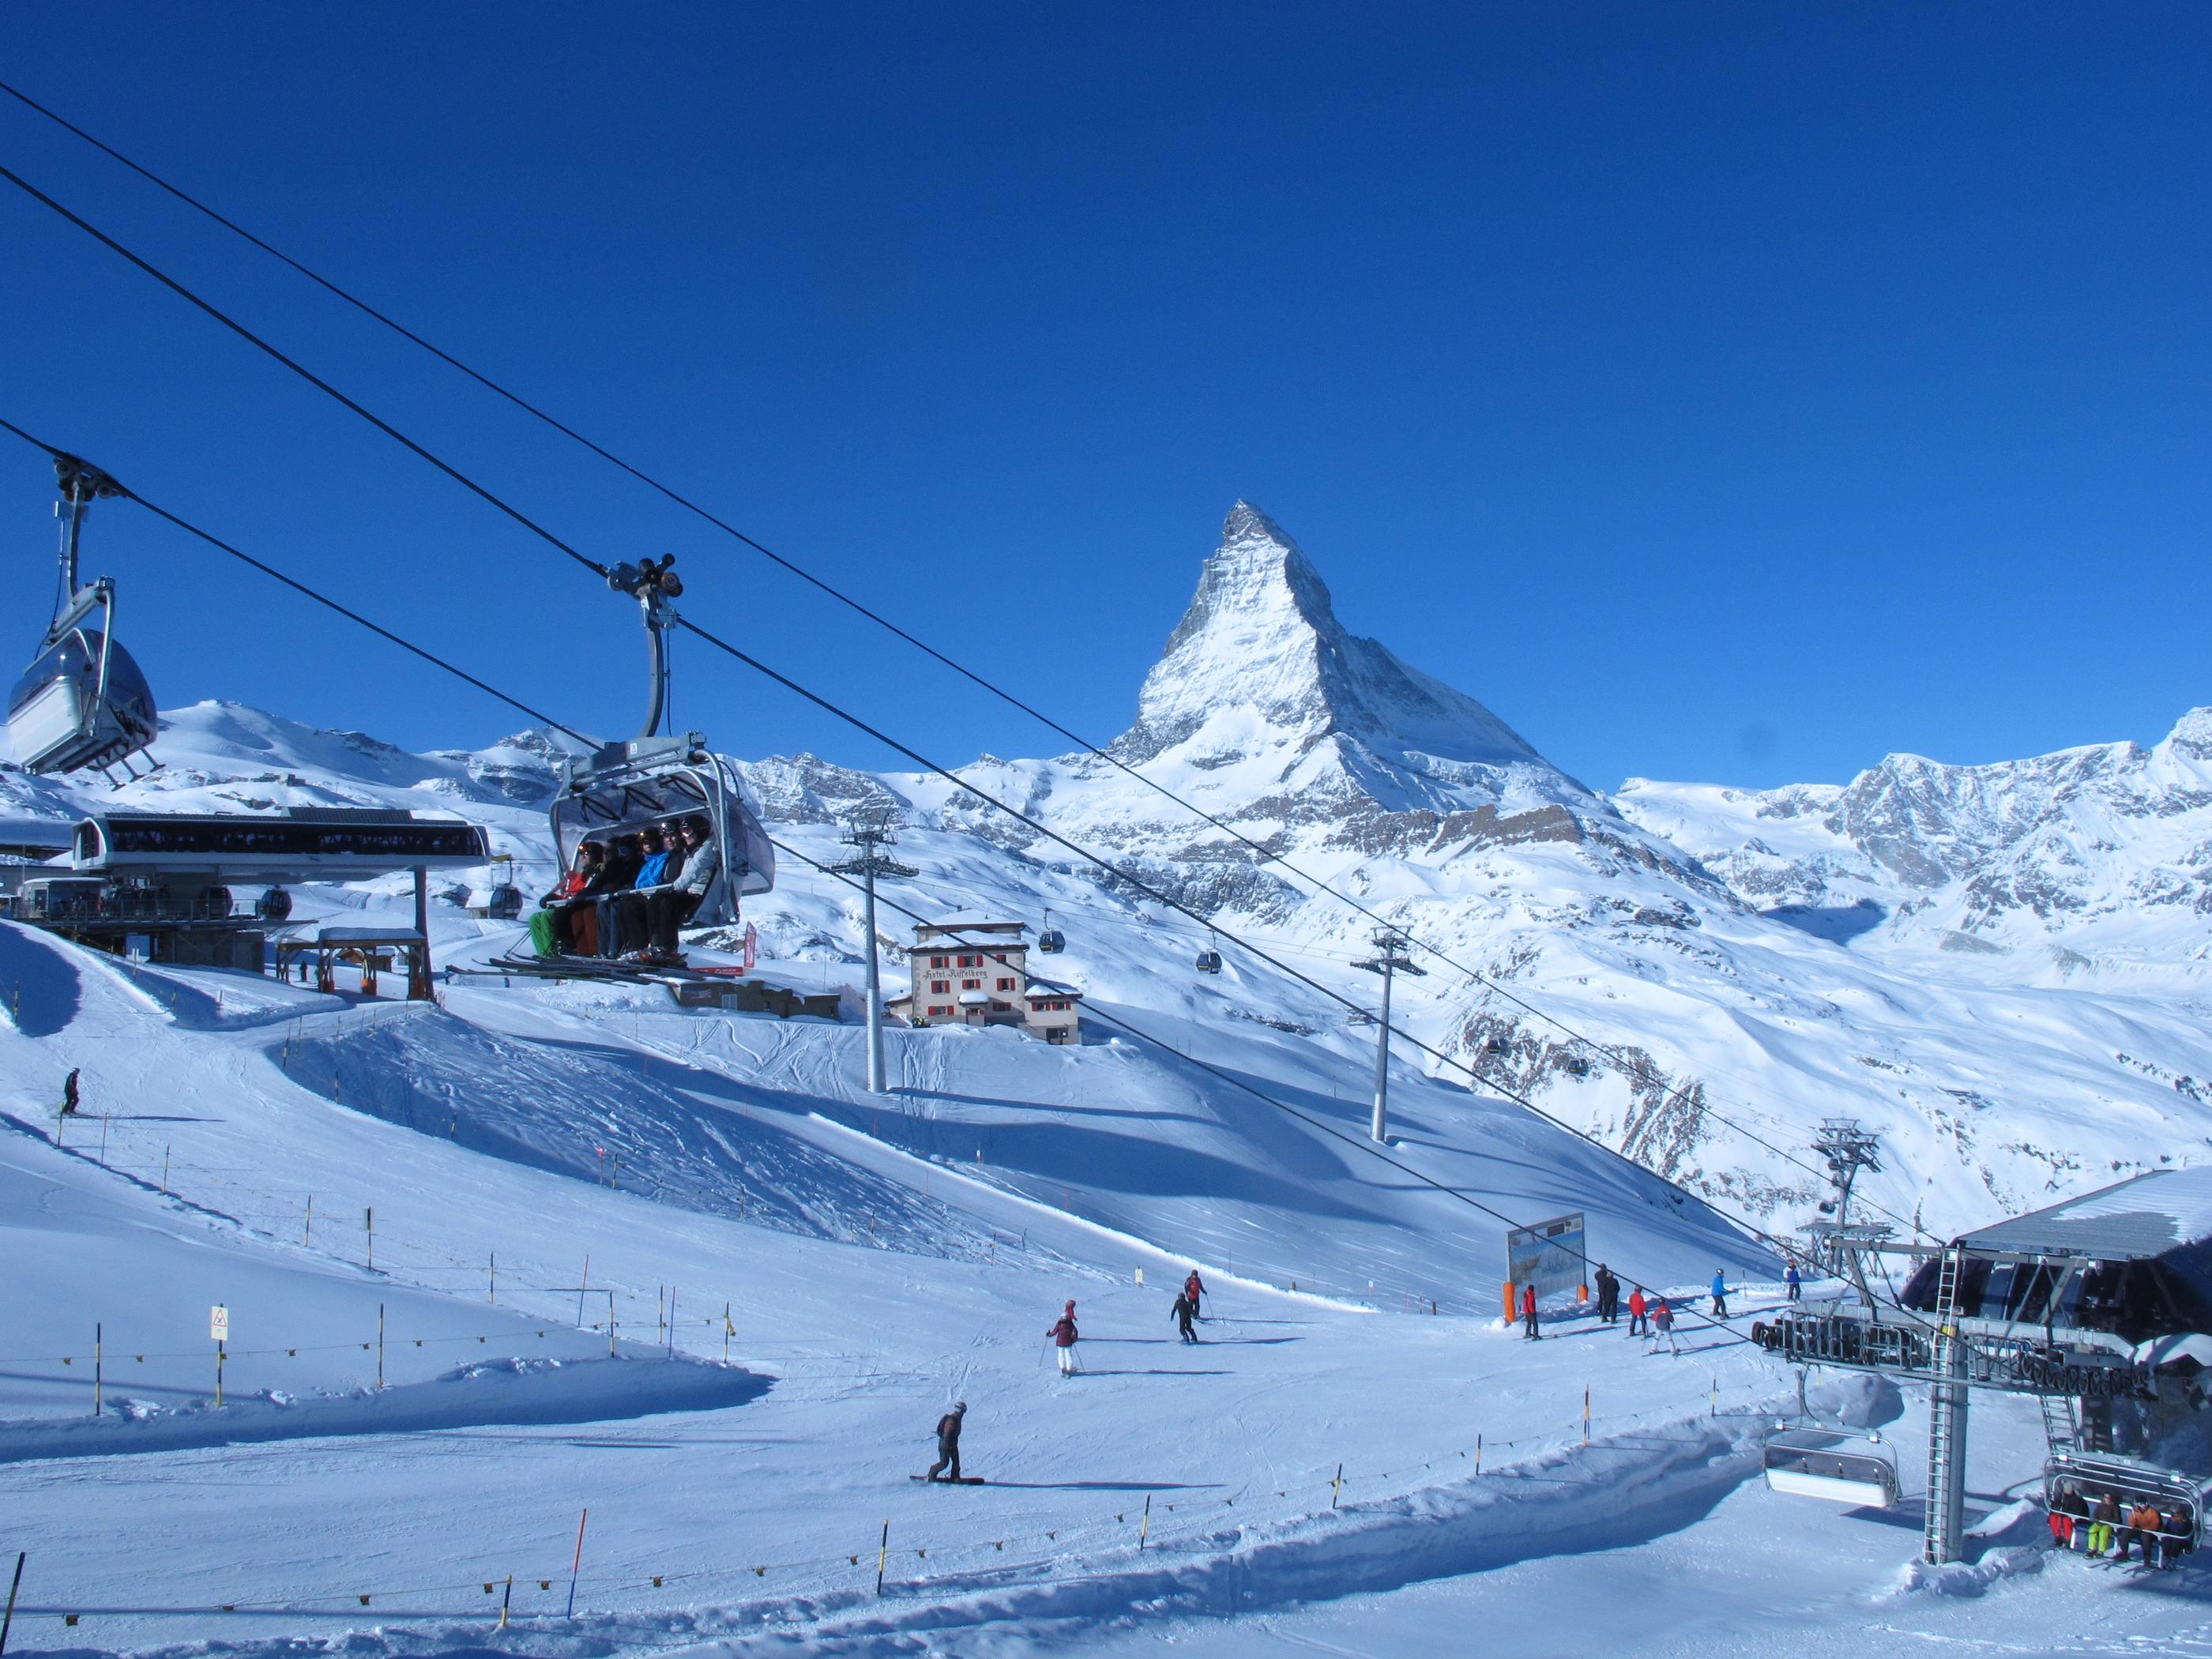 Le domaine skiable de Zermatt avec en toile de fond, le célèbre Cervin. C'est ici que se tiendra la première étape de vitesse de la Coupe du monde de ski alpin. (Archives) LP/Jean-Marc Navarro